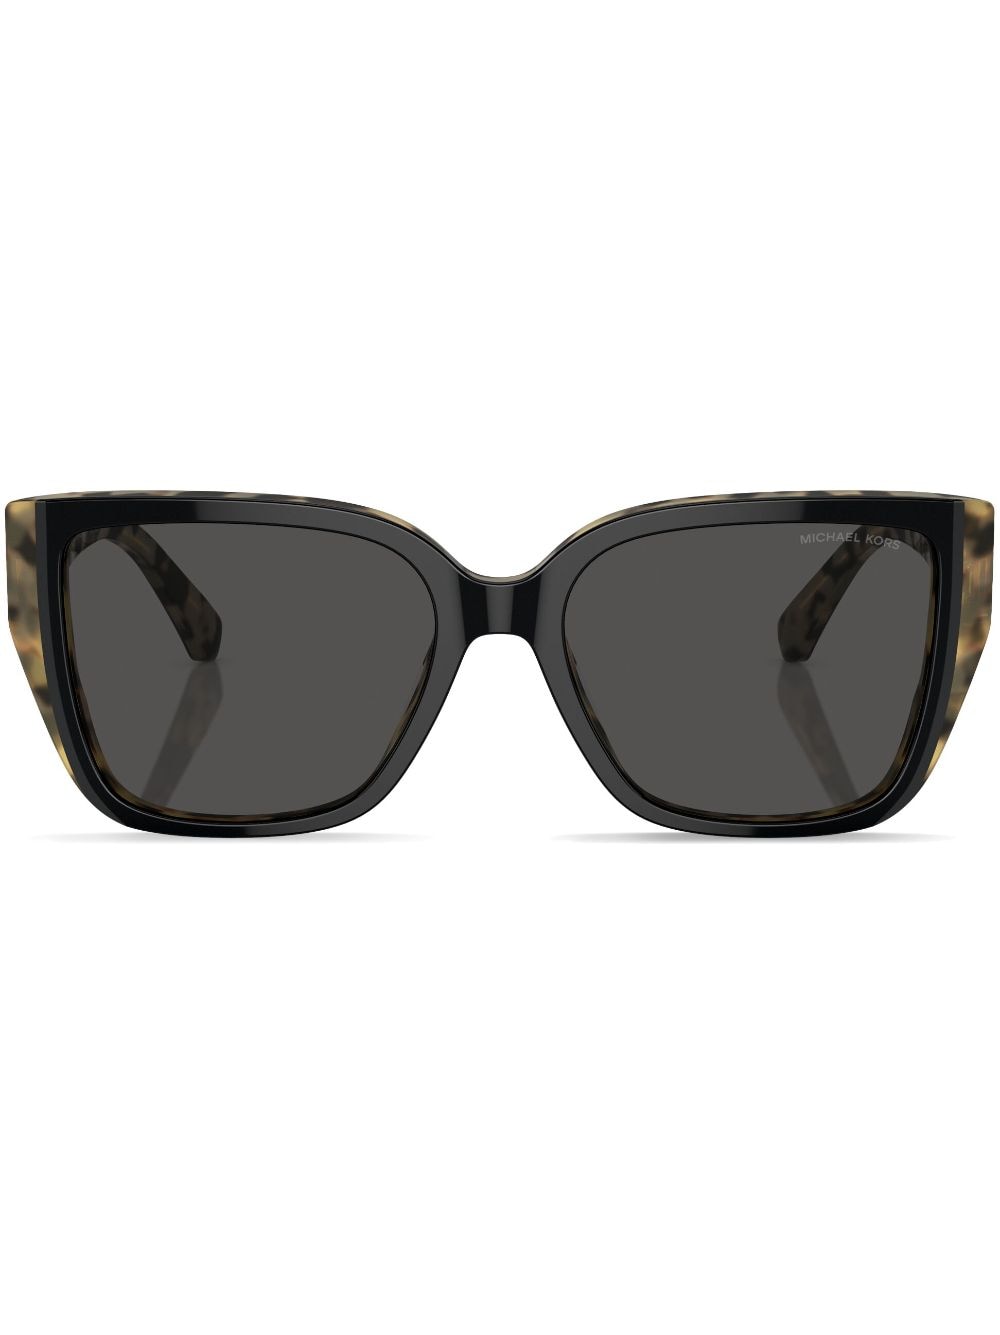 michael kors lunettes de soleil acadia à monture carrée - noir